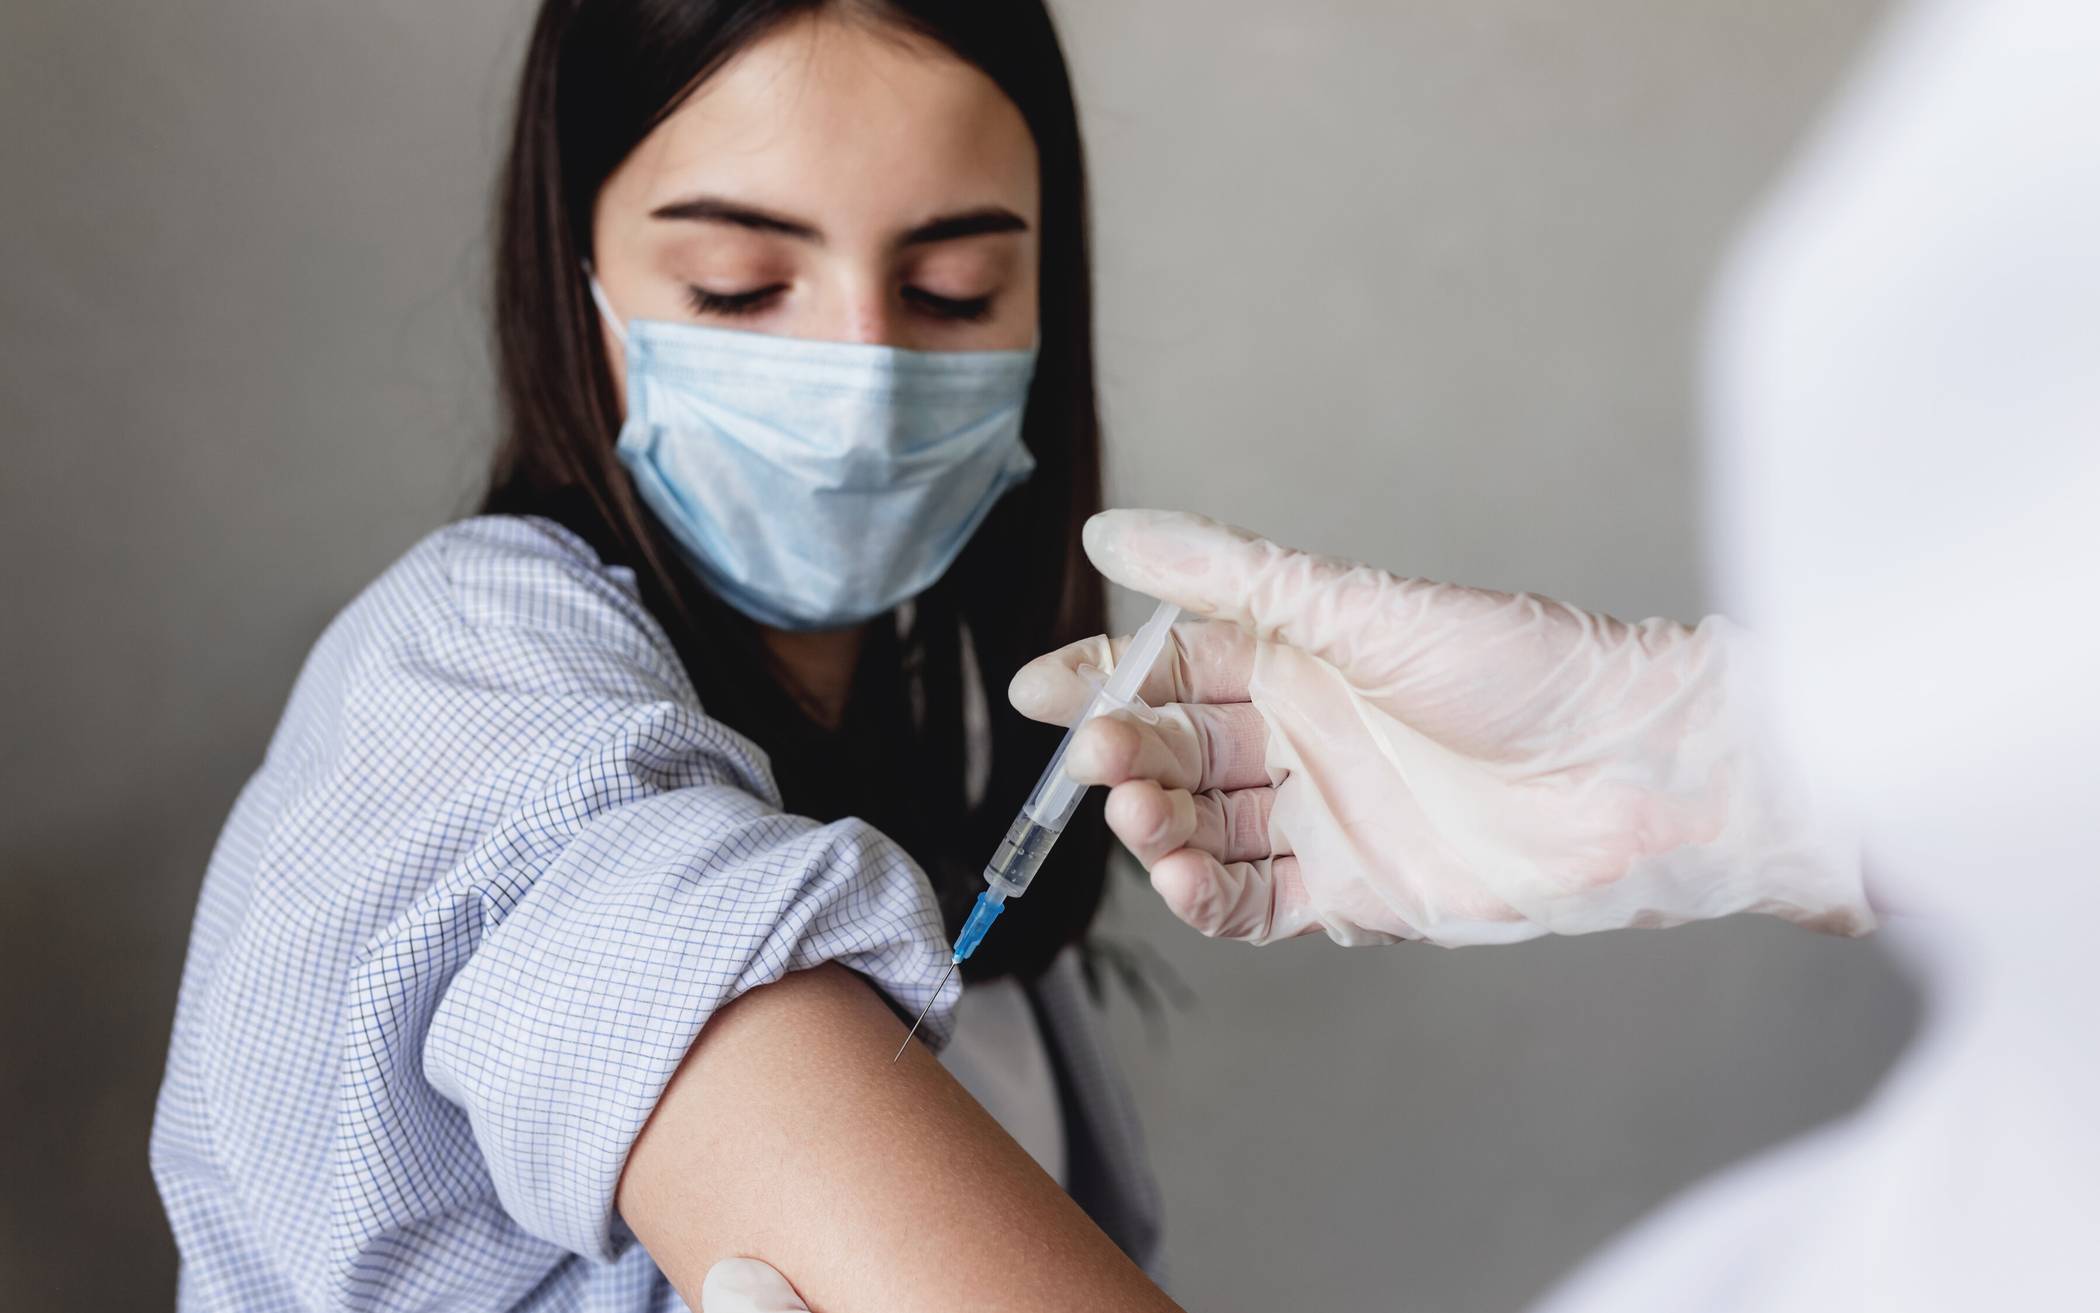  Landrat Hans-Jürgen Petrauschke appelliert: „Ich bitte alle noch nicht geimpften Bürgerinnen und Bürger das Impfangebot anzunehmen.“ 